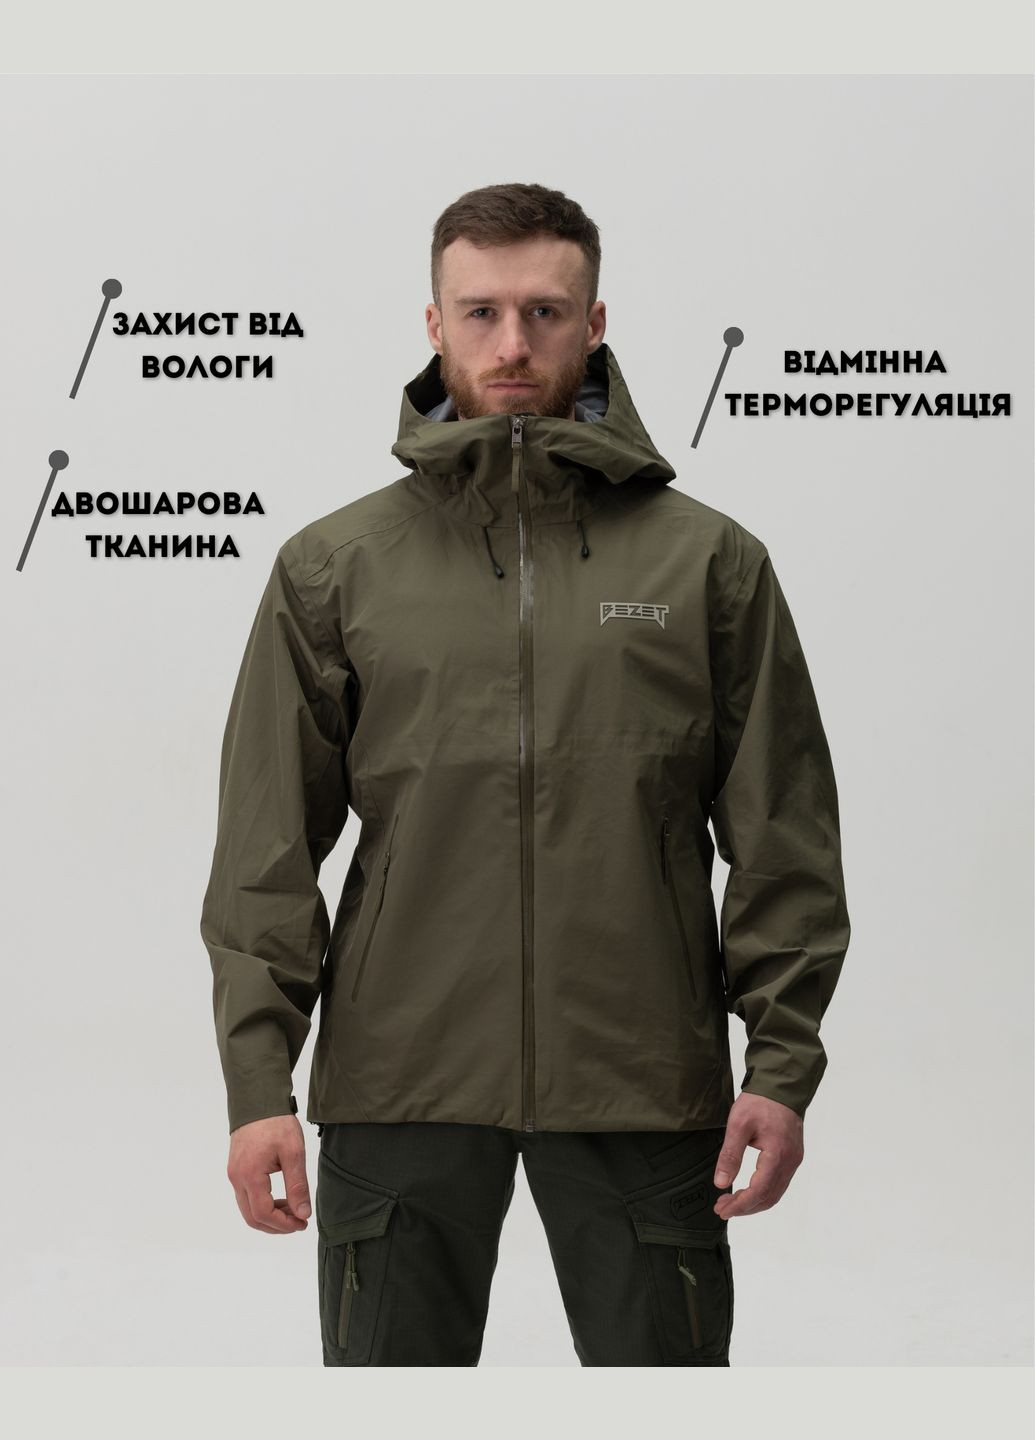 Оливковая (хаки) демисезонная куртка ветровка hieldtech хаки BEZET